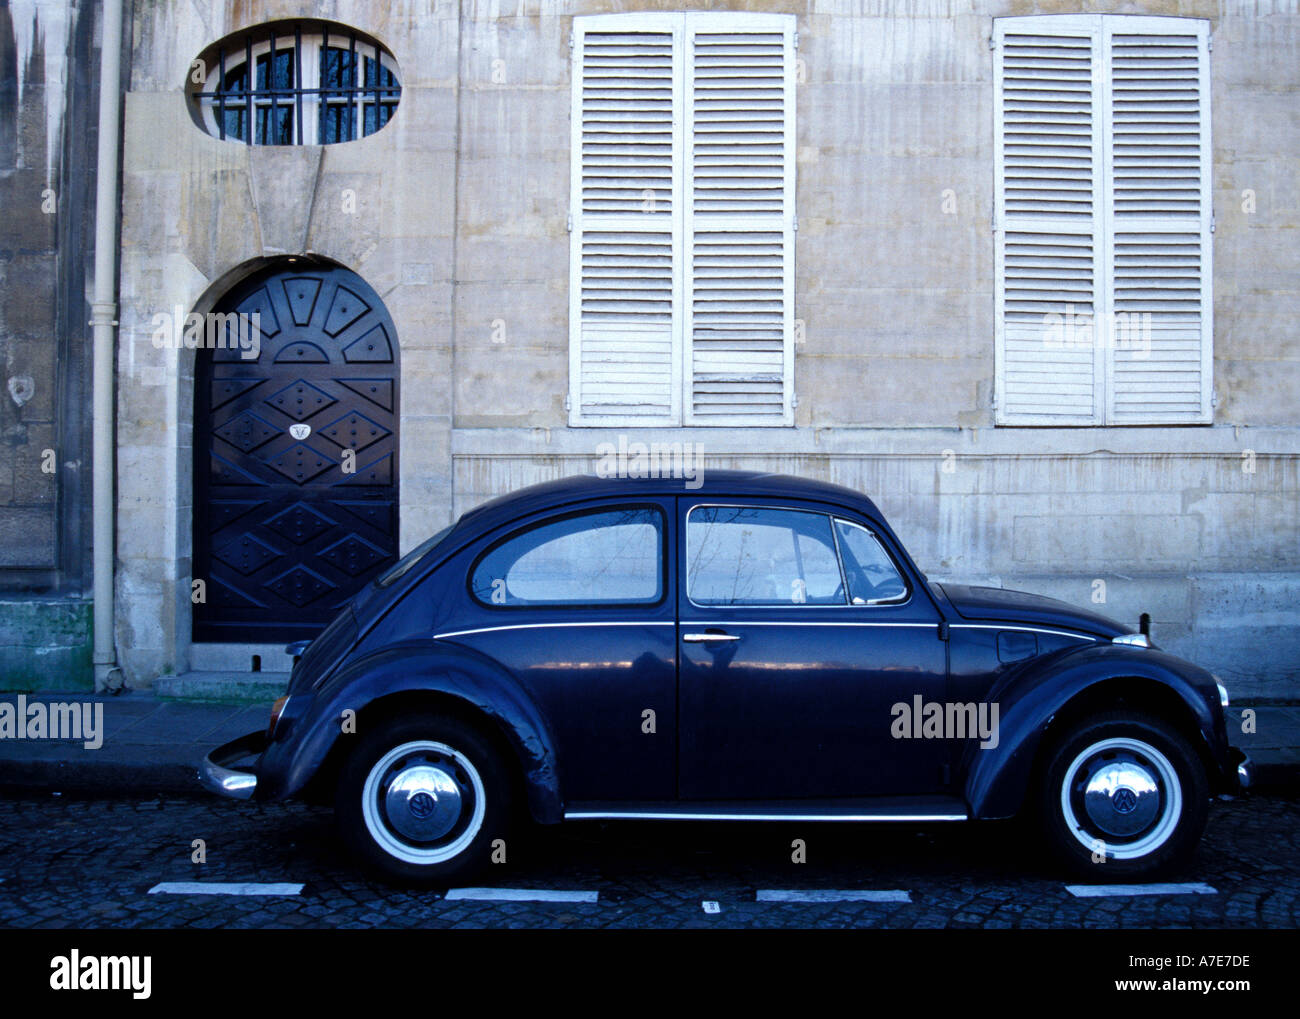 Blue Vintage Volkswagen Beetle parked on Quai de Bourbon Ile St Louis Paris Stock Photo